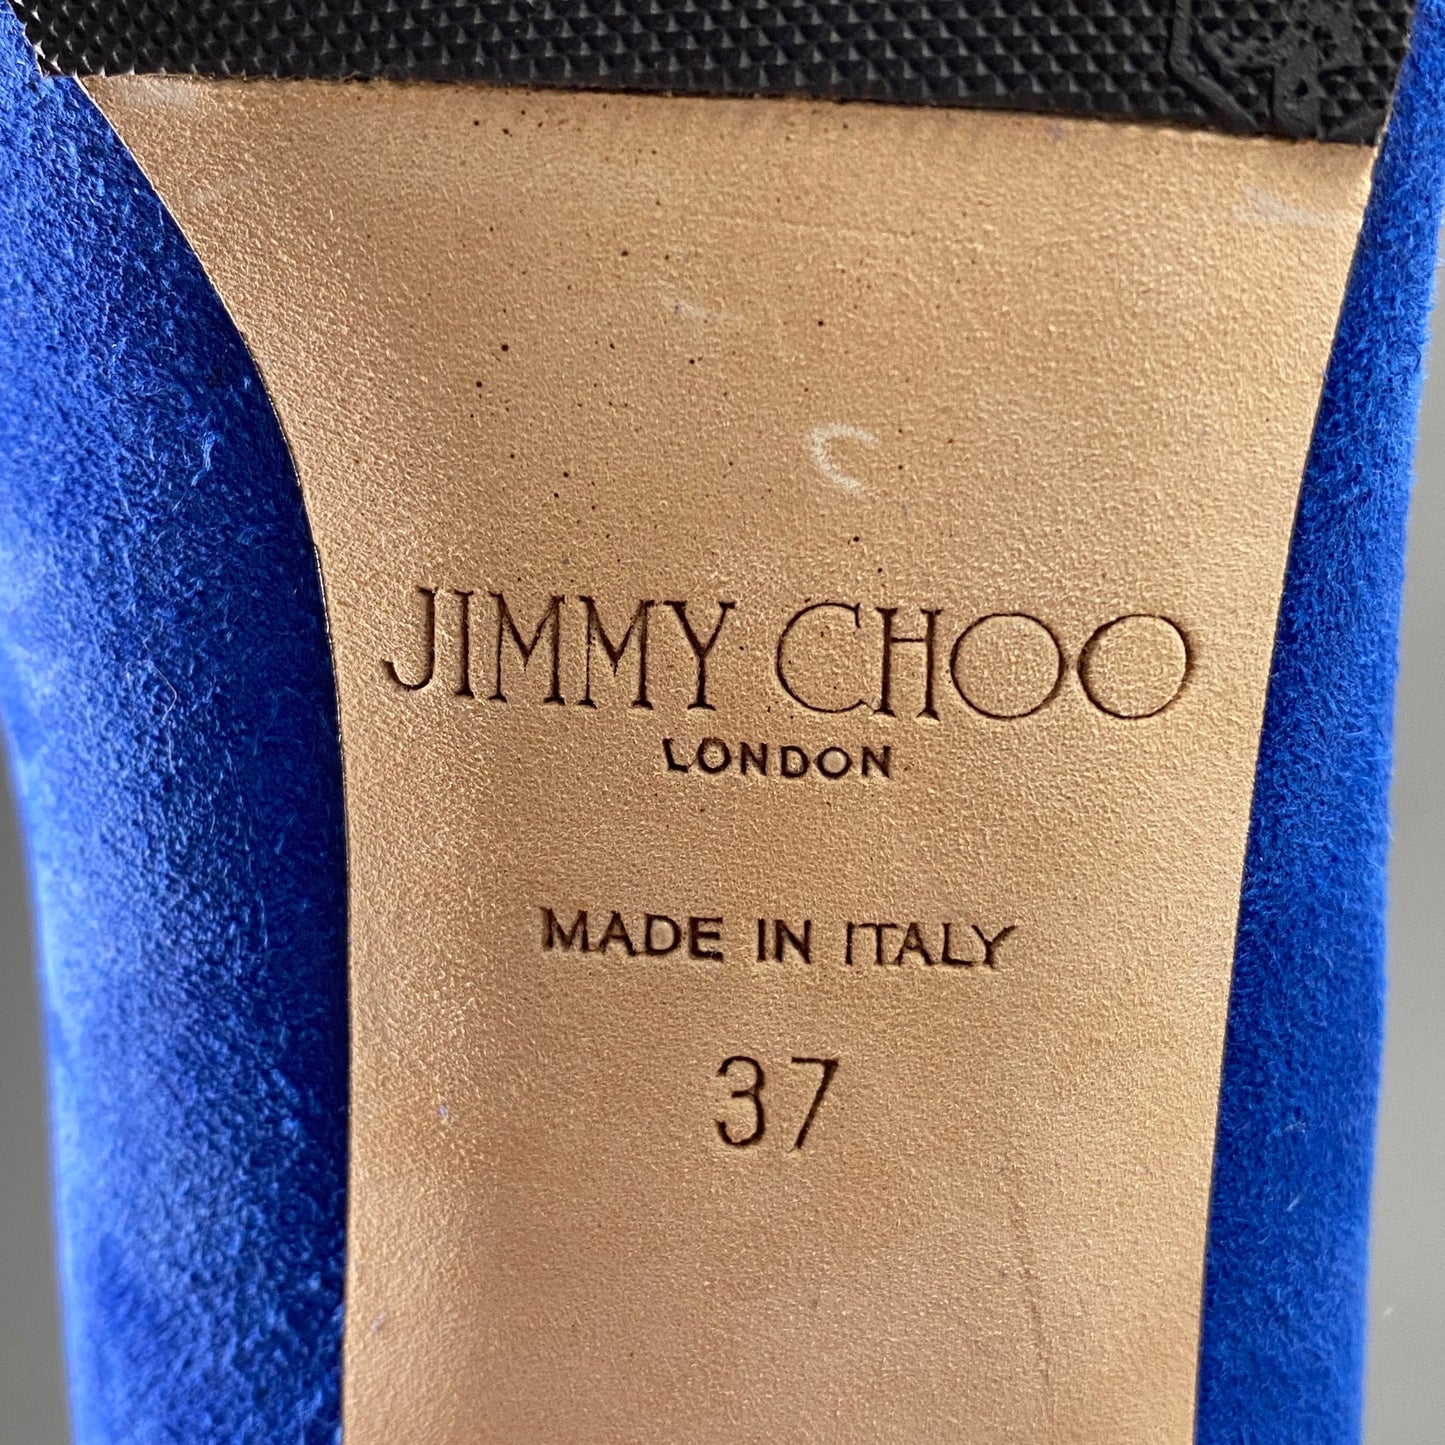 2a28 JIMMY CHOO ジミーチュウ イタリア製 144MENDEZ バックジップ ヒール ブーティ シューズ  37 ブルー スエード レザー MADE IN ITALY